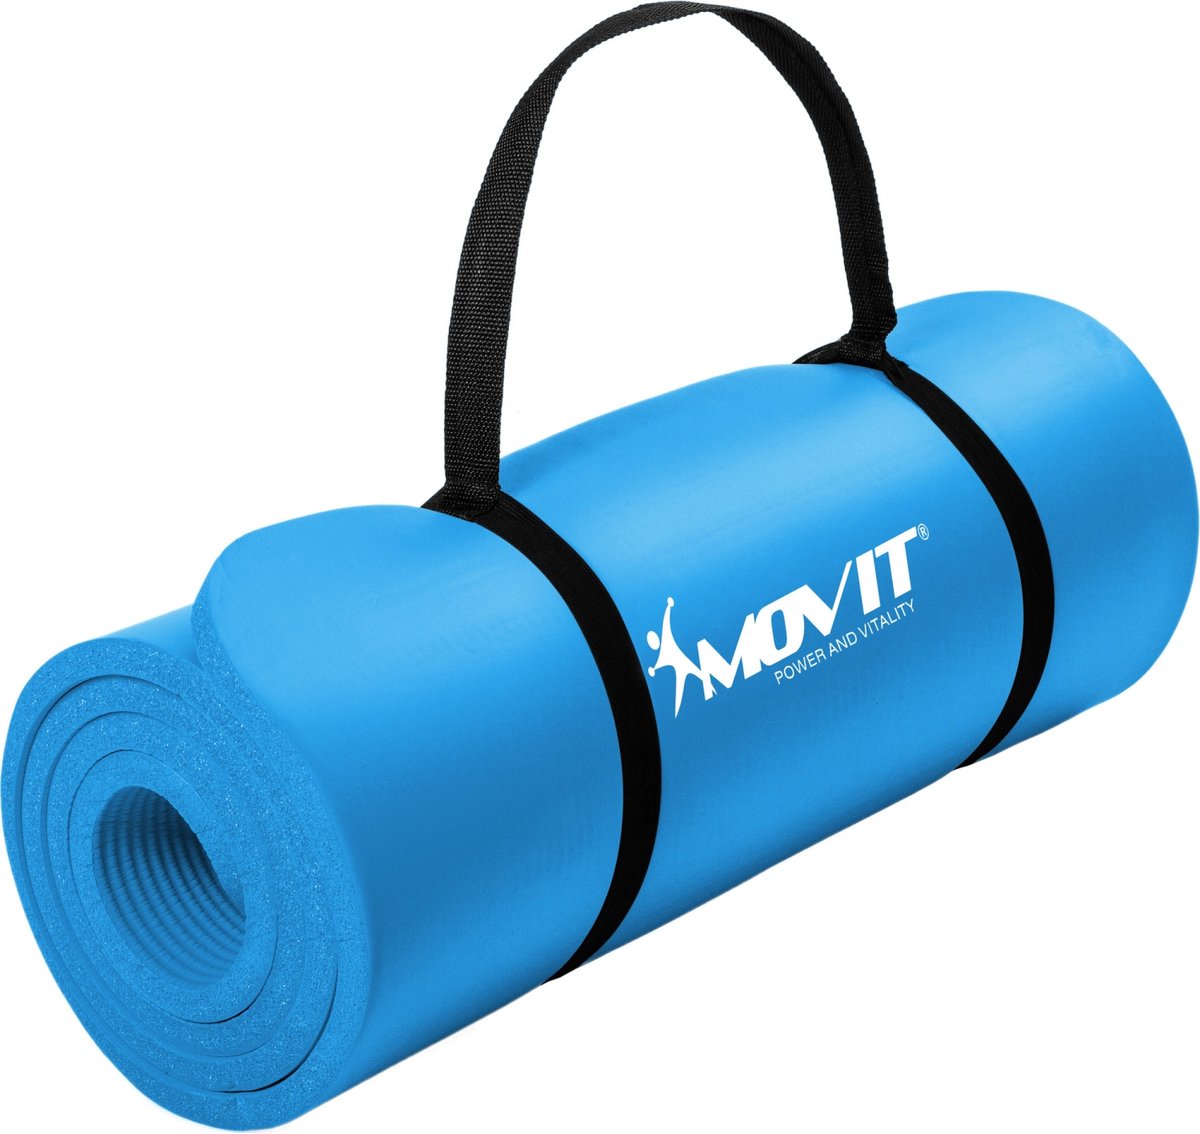 Yoga mat - Yogamat - Fitness mat - Sport mat - Fitness matje - Pilates mat - Oprolbaar - Inclusief handgreep - 190 x 60 x 1.5 cm - Hemelsblauw